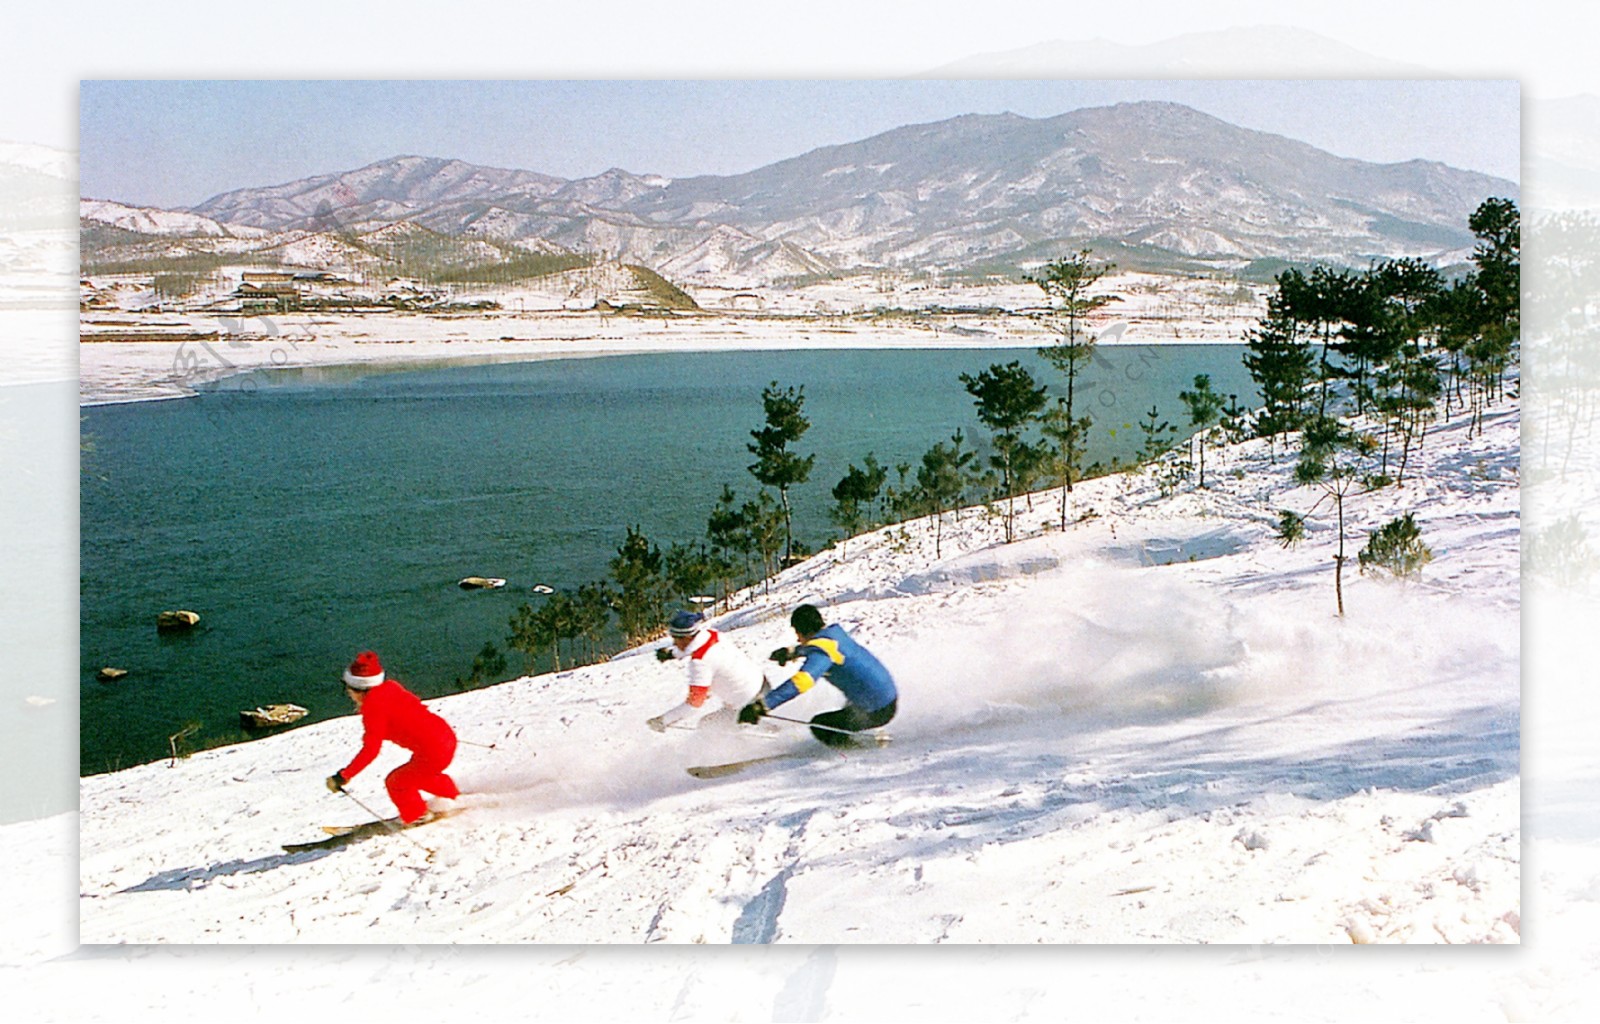 中国吉林冬天雪景景观景色风景风情人文旅游民风民俗广告素材大辞典